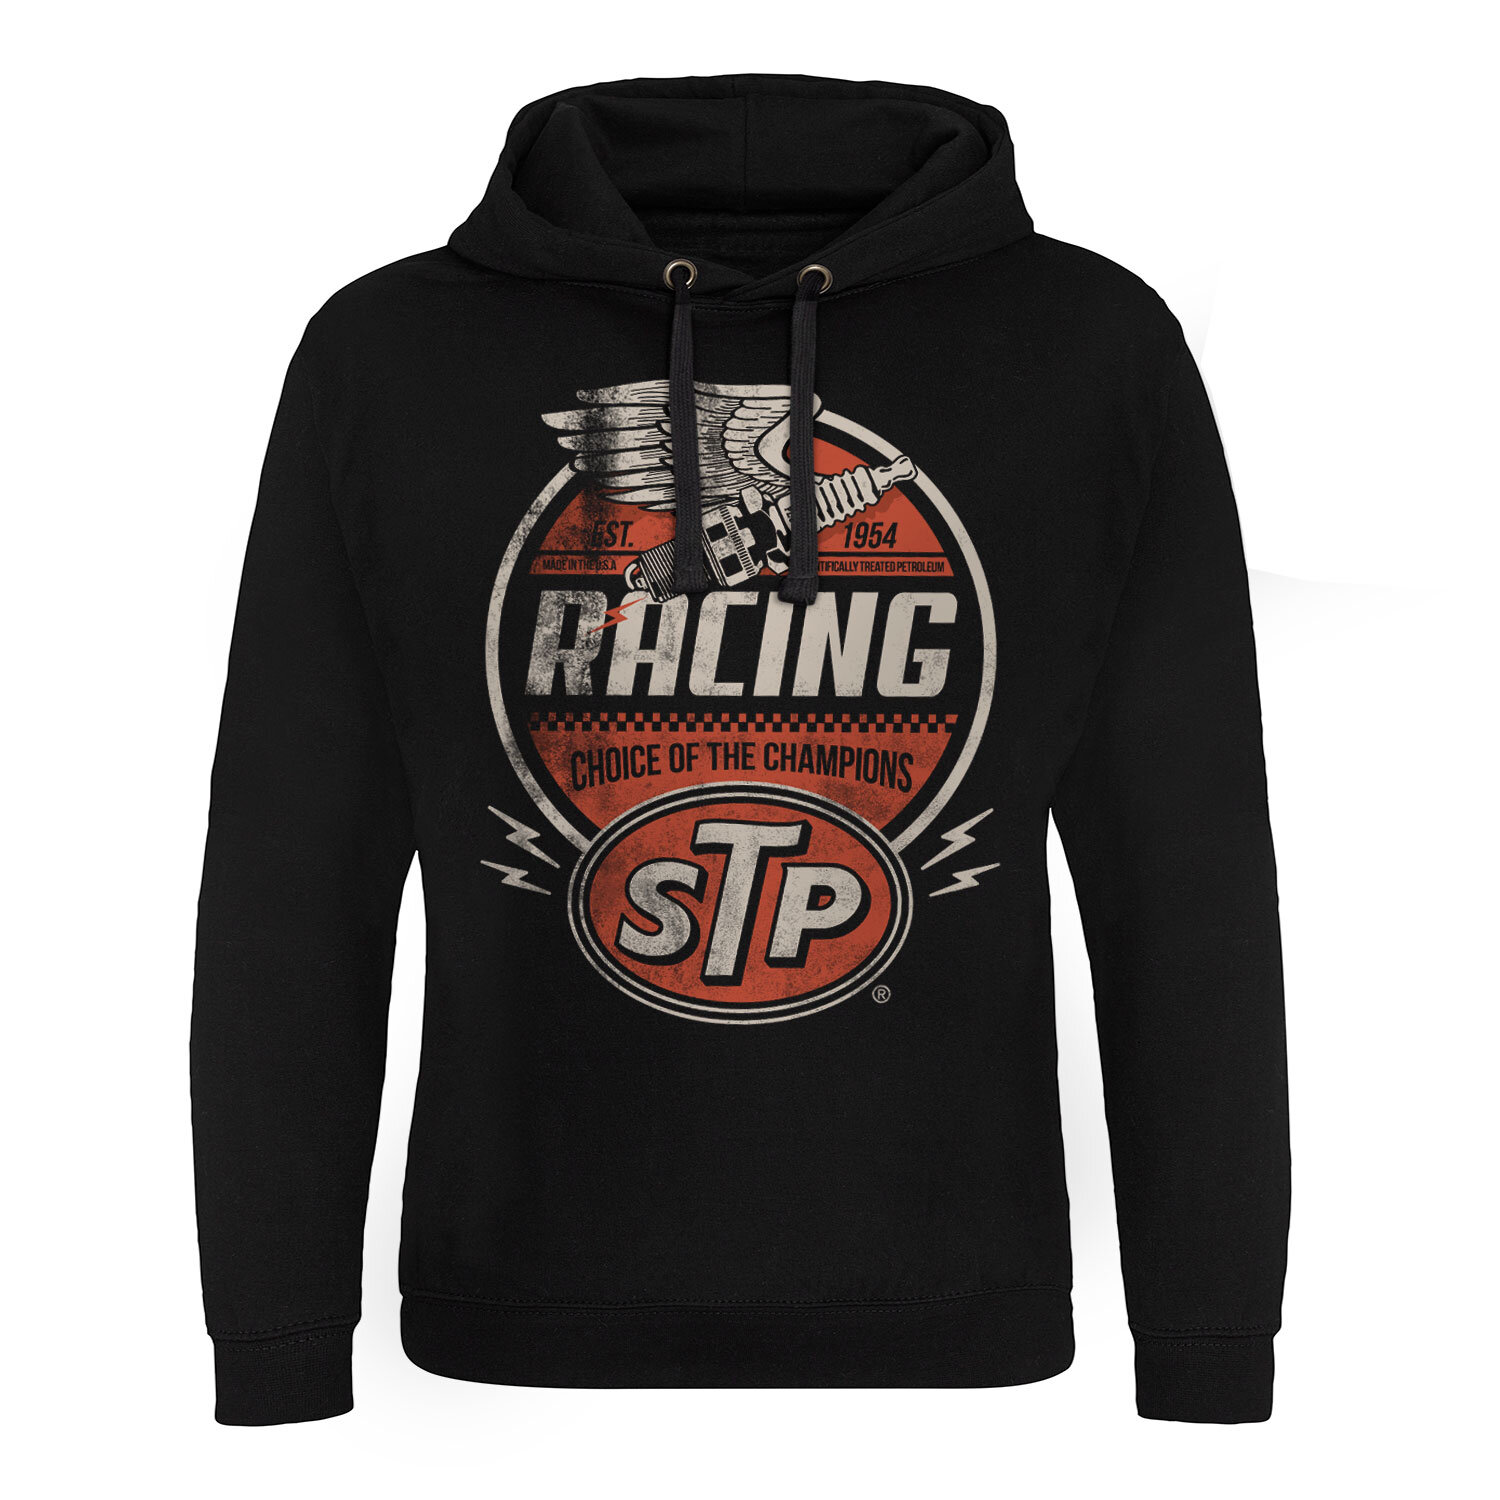 STP Vintage Racing Epic Hoodie